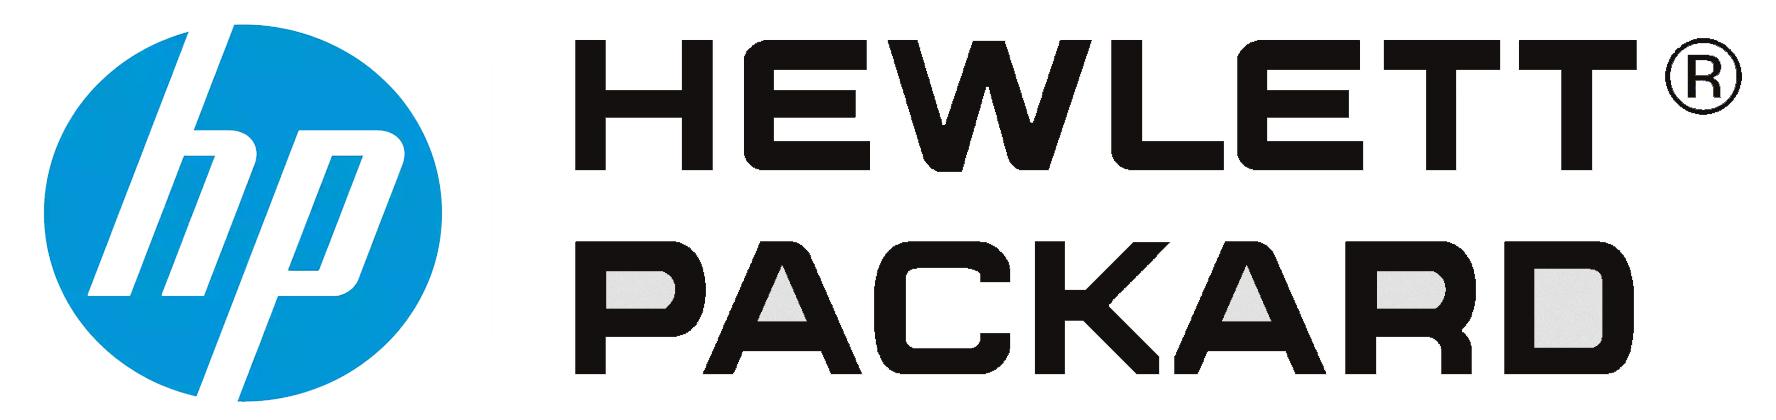 HP Hewlett-Packard Logo - Hewlett packard Logos